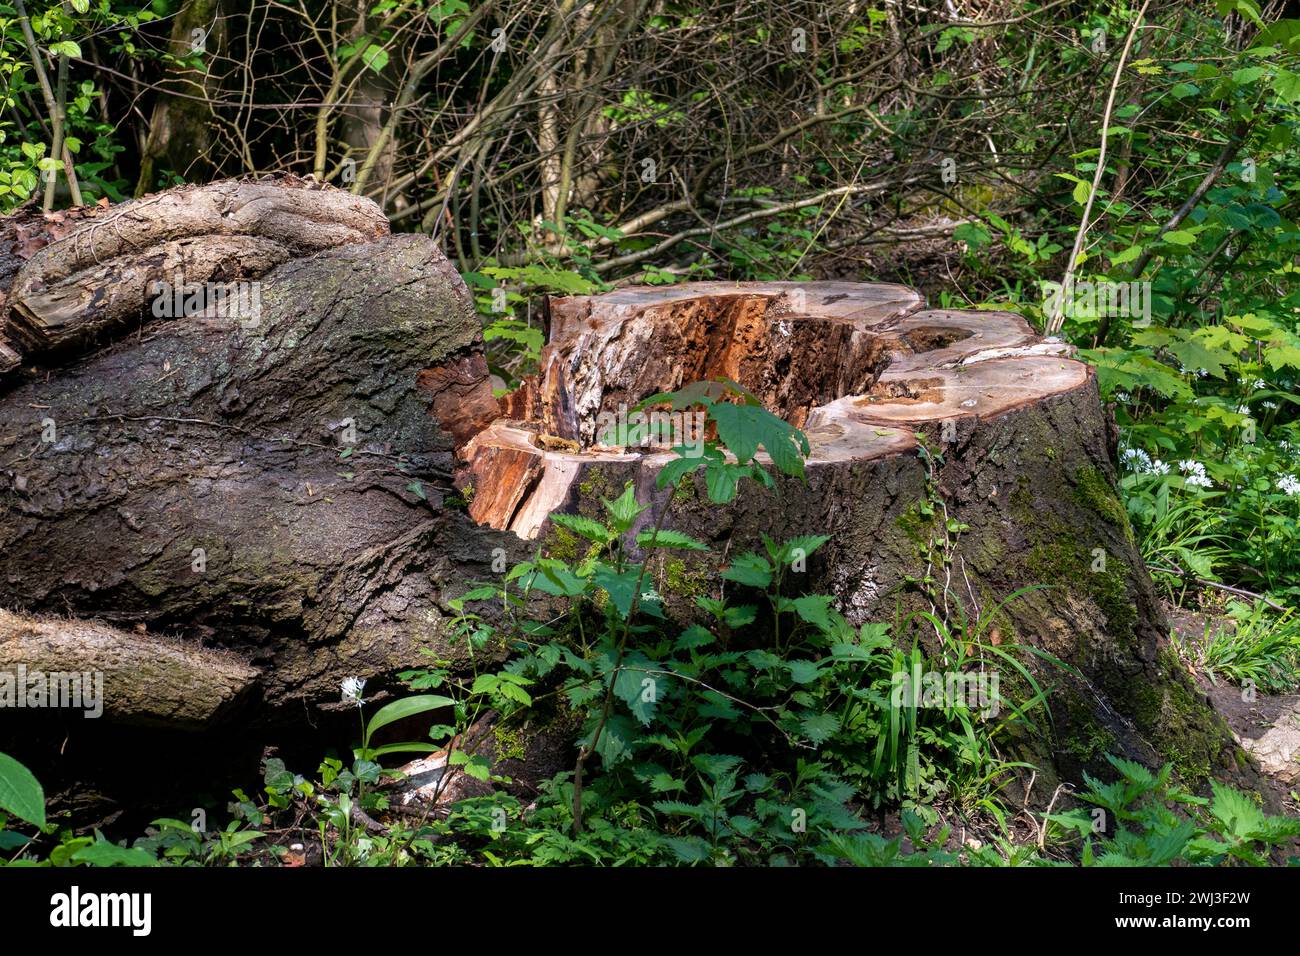 Umgestürzter Baum mit Austrieben und Lianen umwunden im Wald Foto Stock